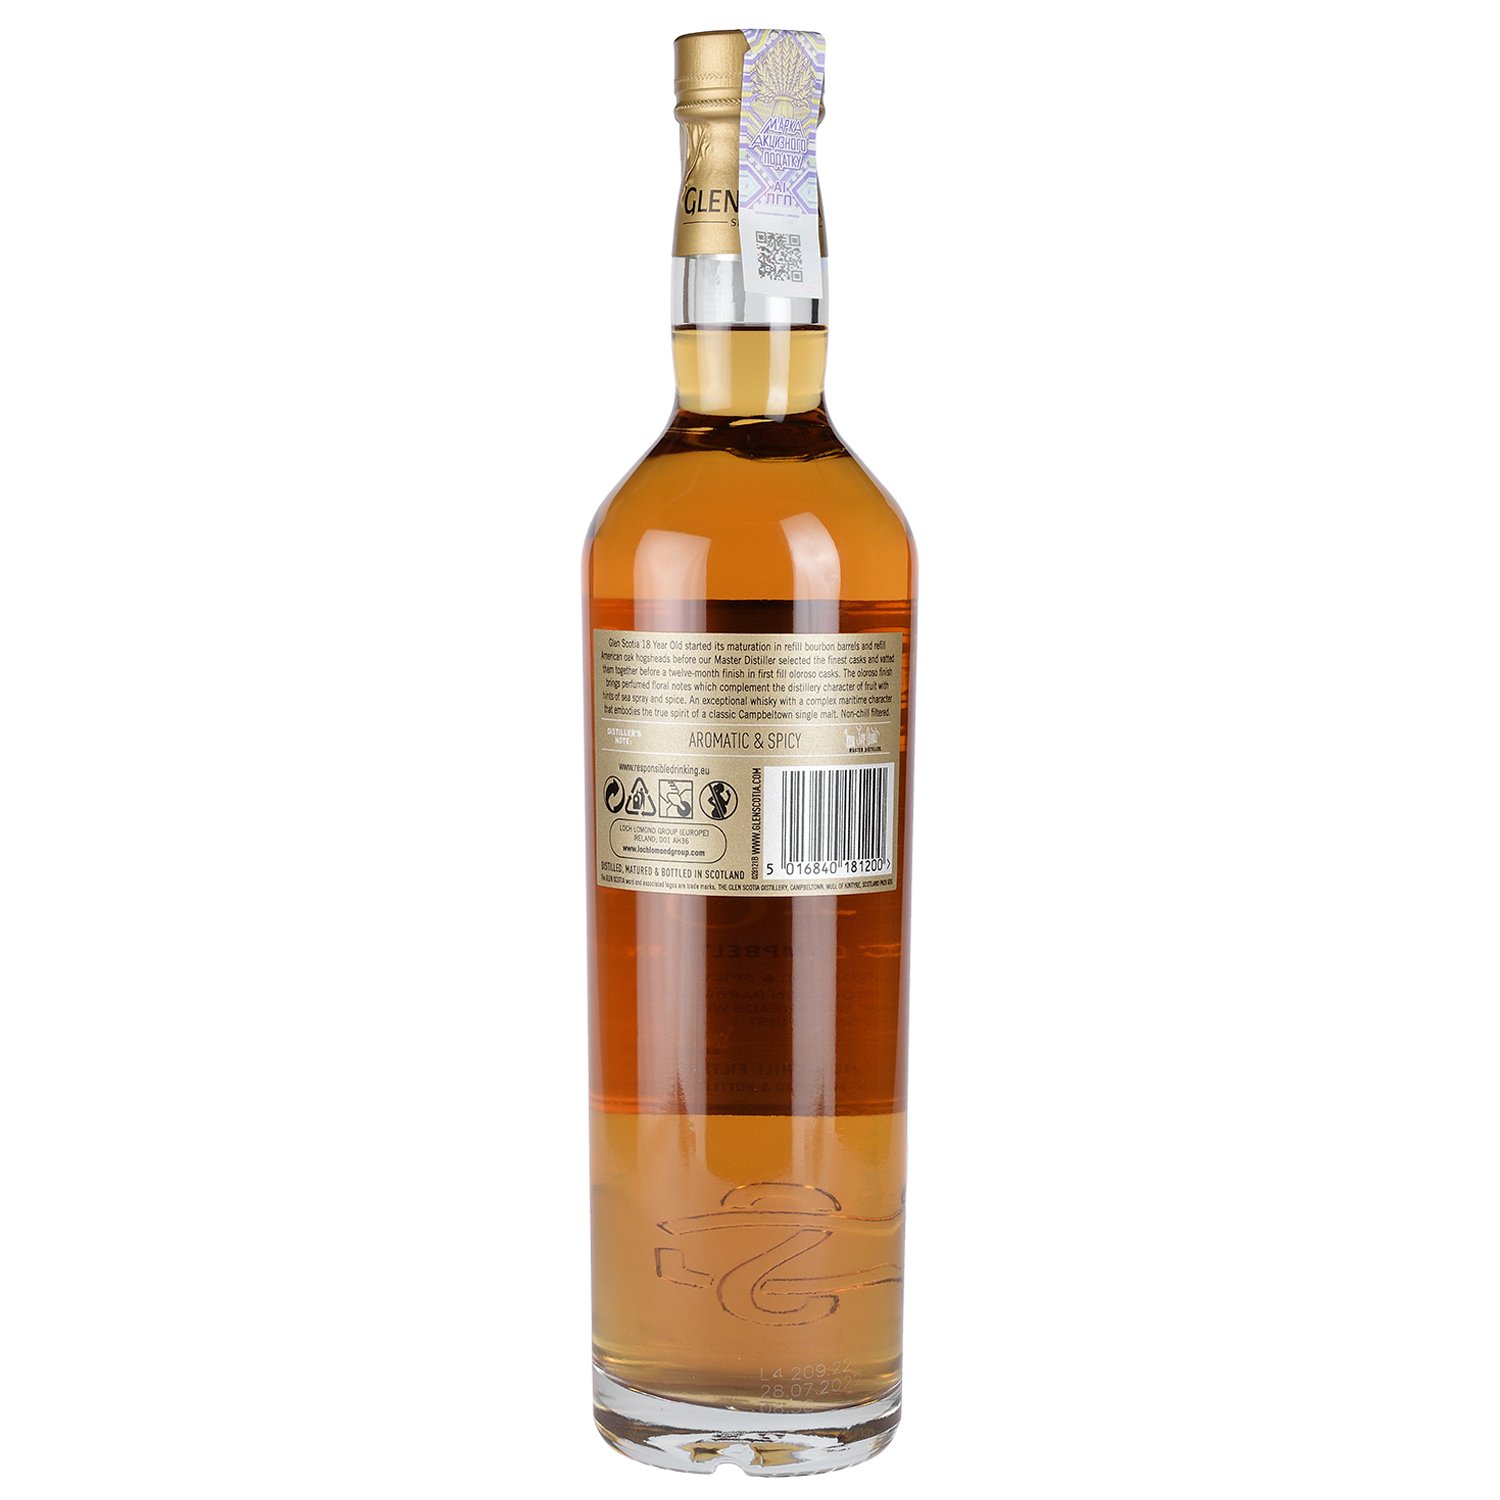 Віскі Glen Scotia Single Malt Scotch Whisky 18 yo, у подарунковій упаковці, 46%, 0,7 л - фото 2